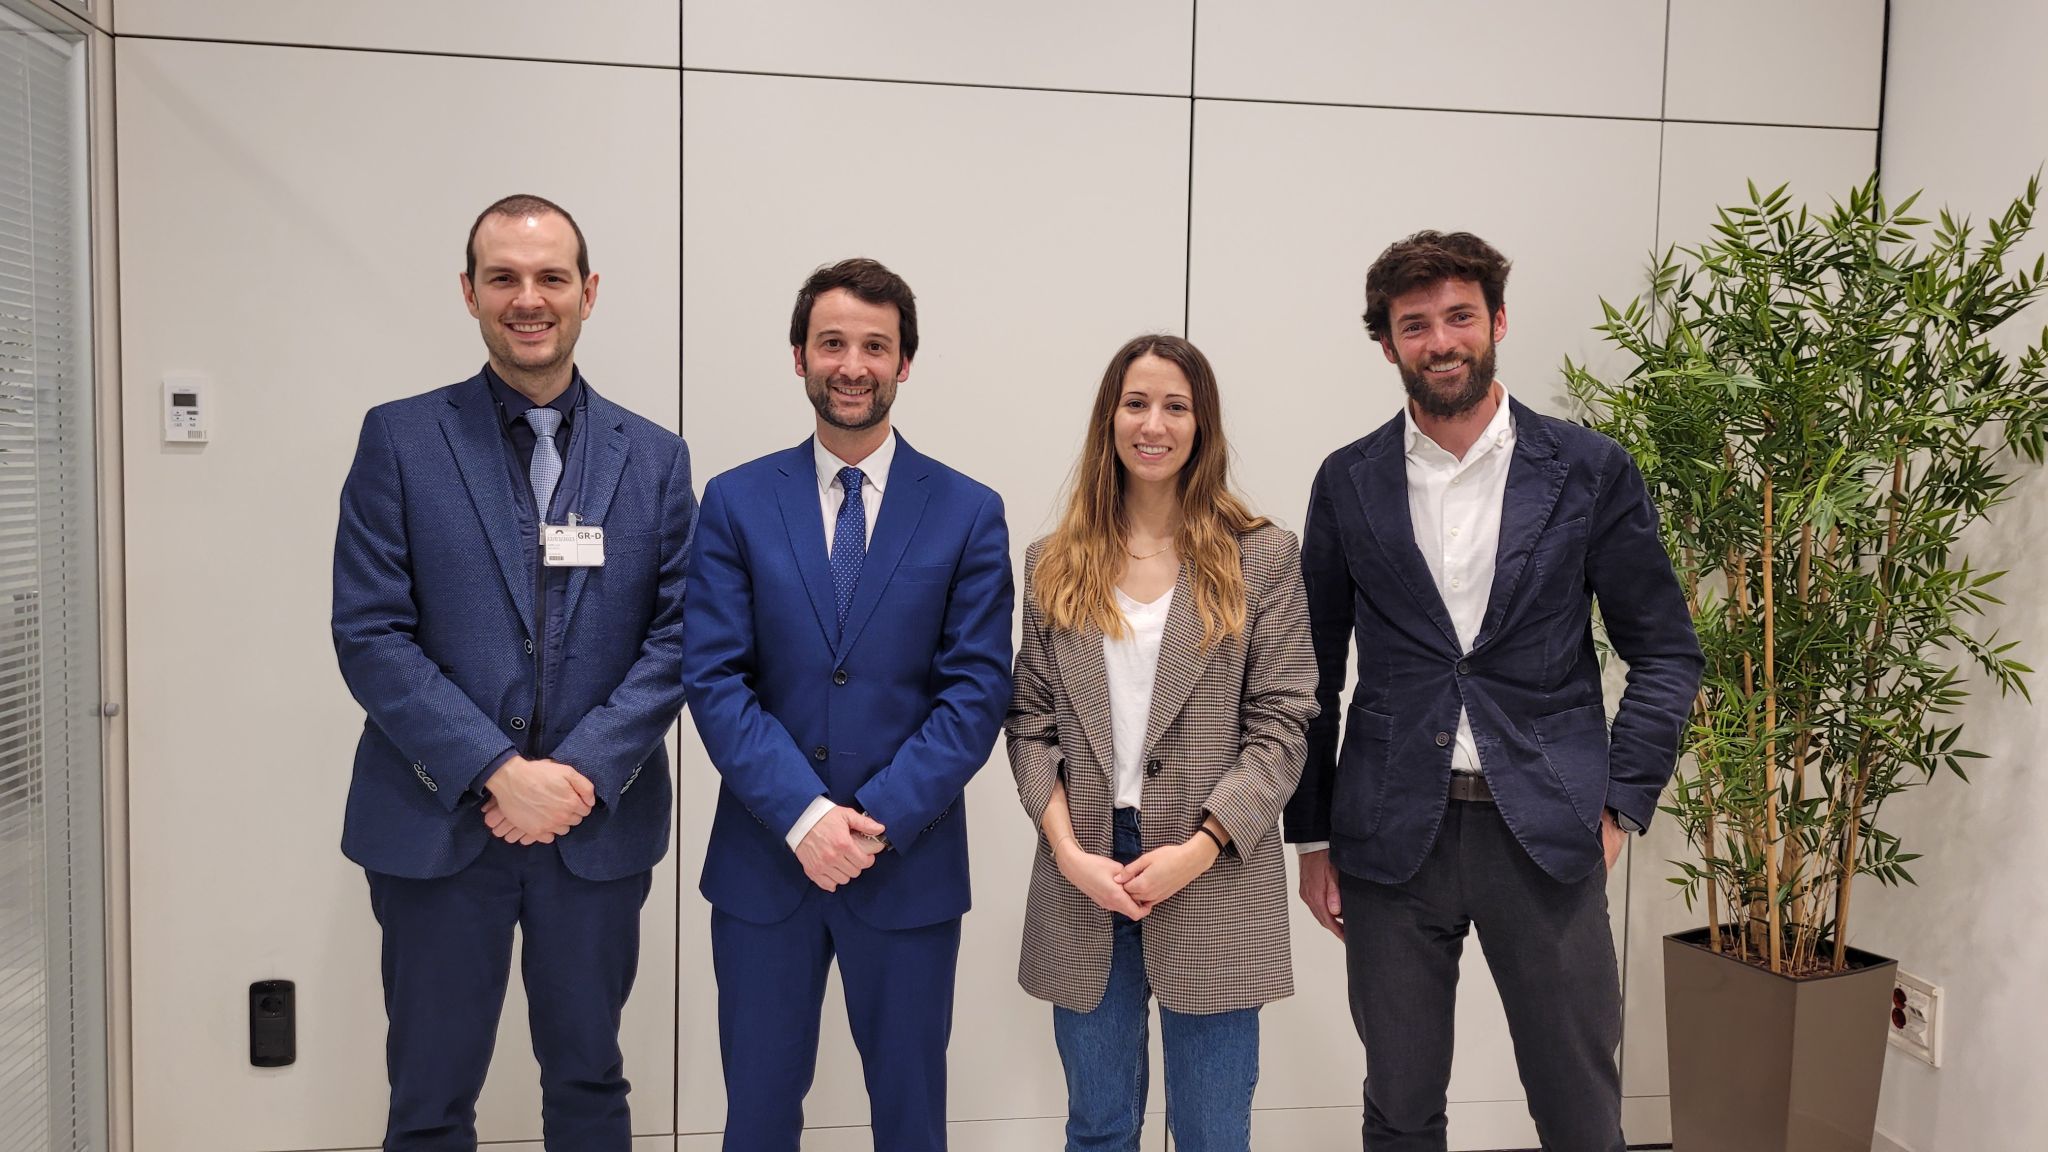 Reunió de la Jove Procura amb la Diputada de Junts per Catalunya al Parlament